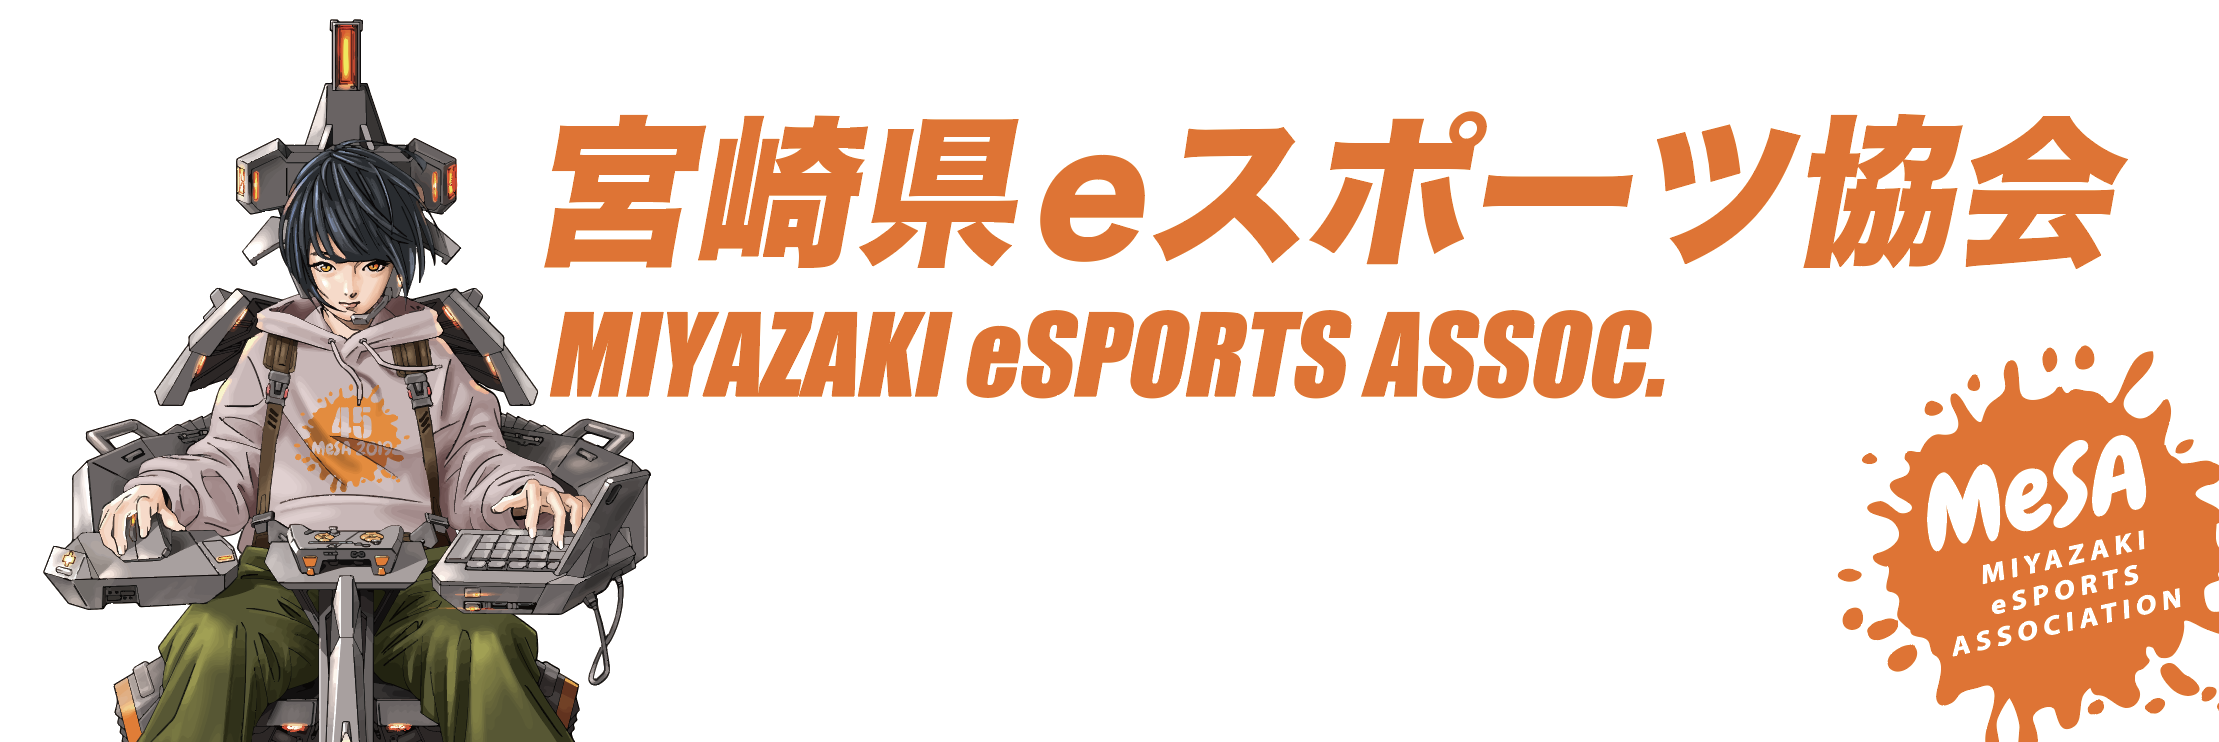 宮崎県eスポーツ協会